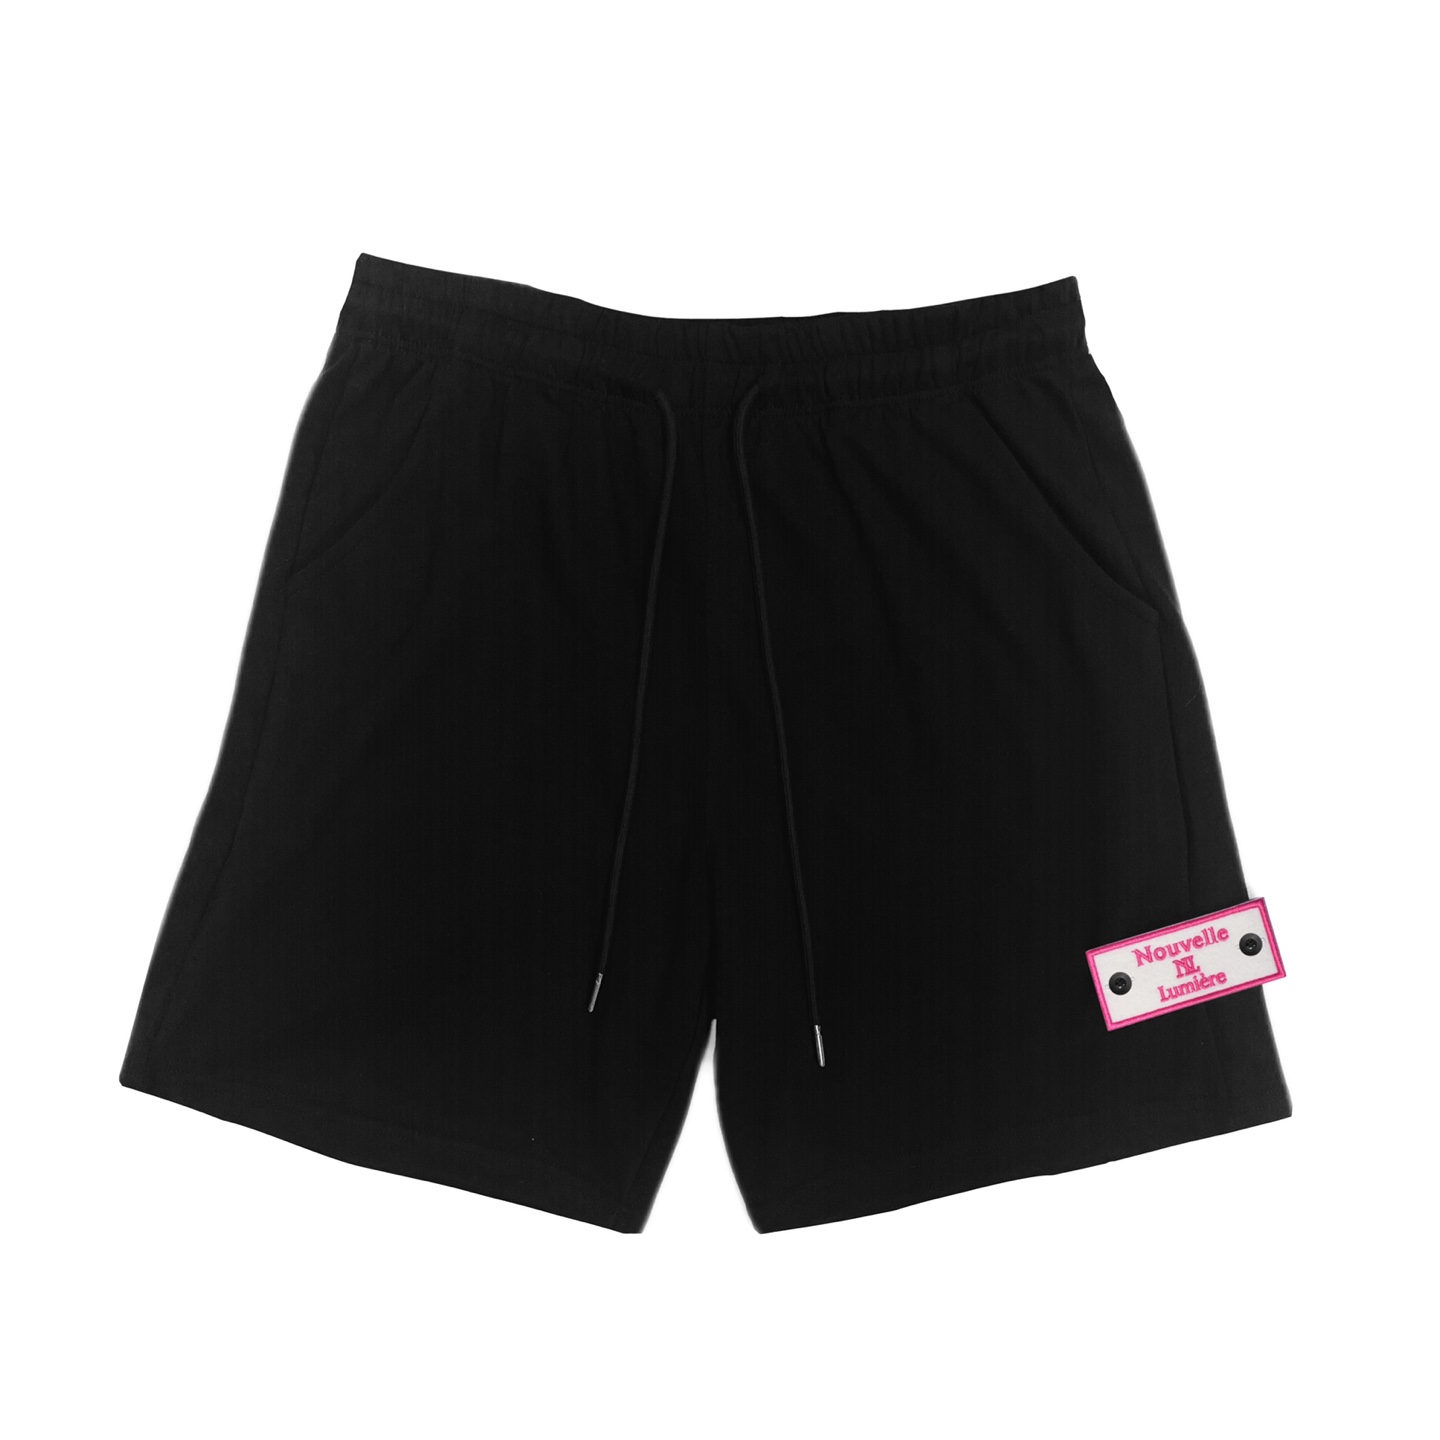 黑色短裤 (Pink edition)